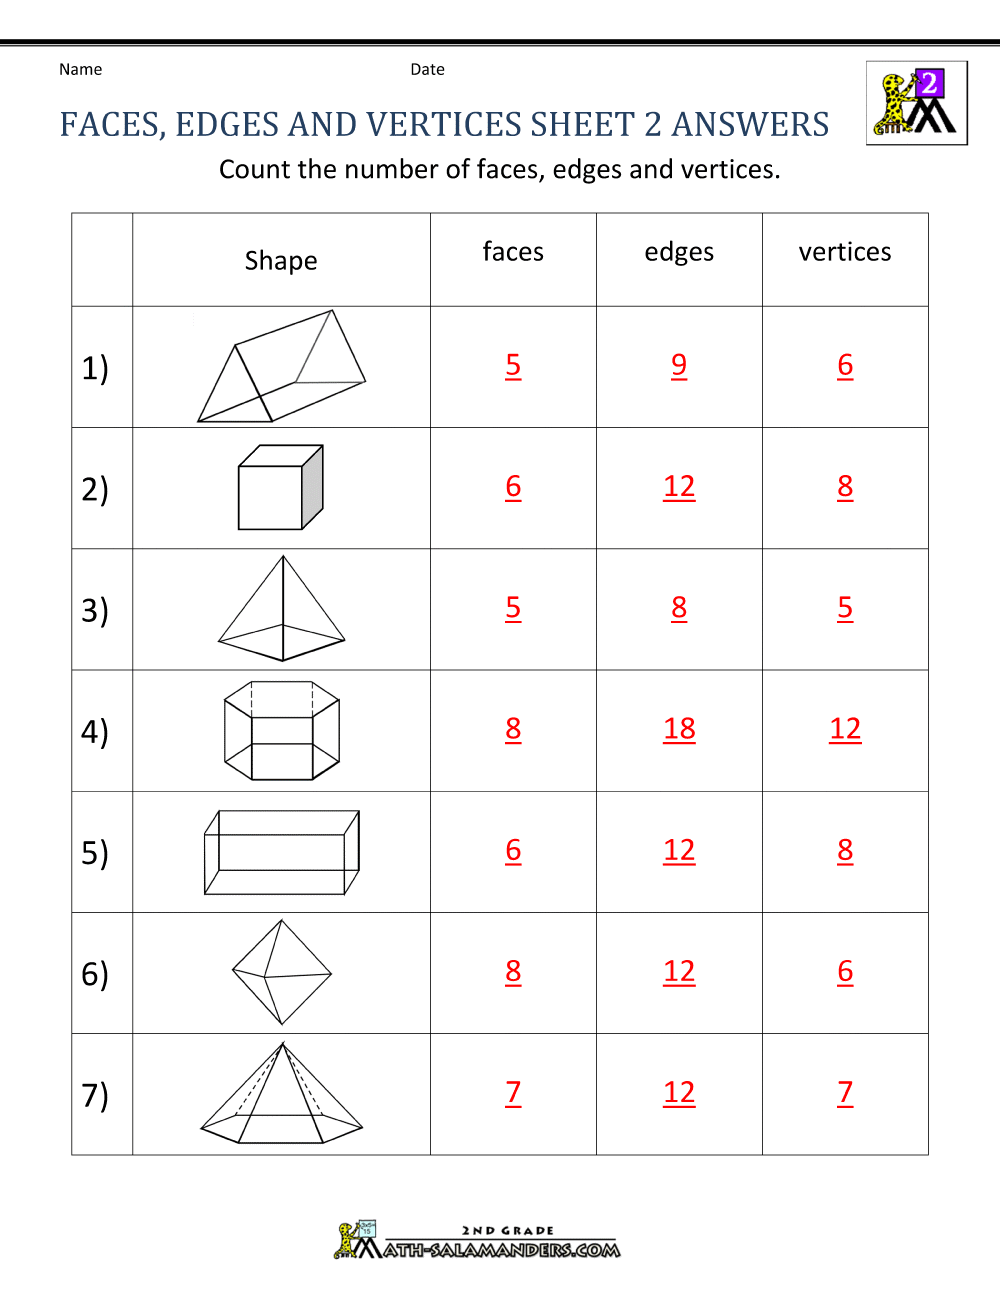 3d Shapes Faces Edges Vertices Chart